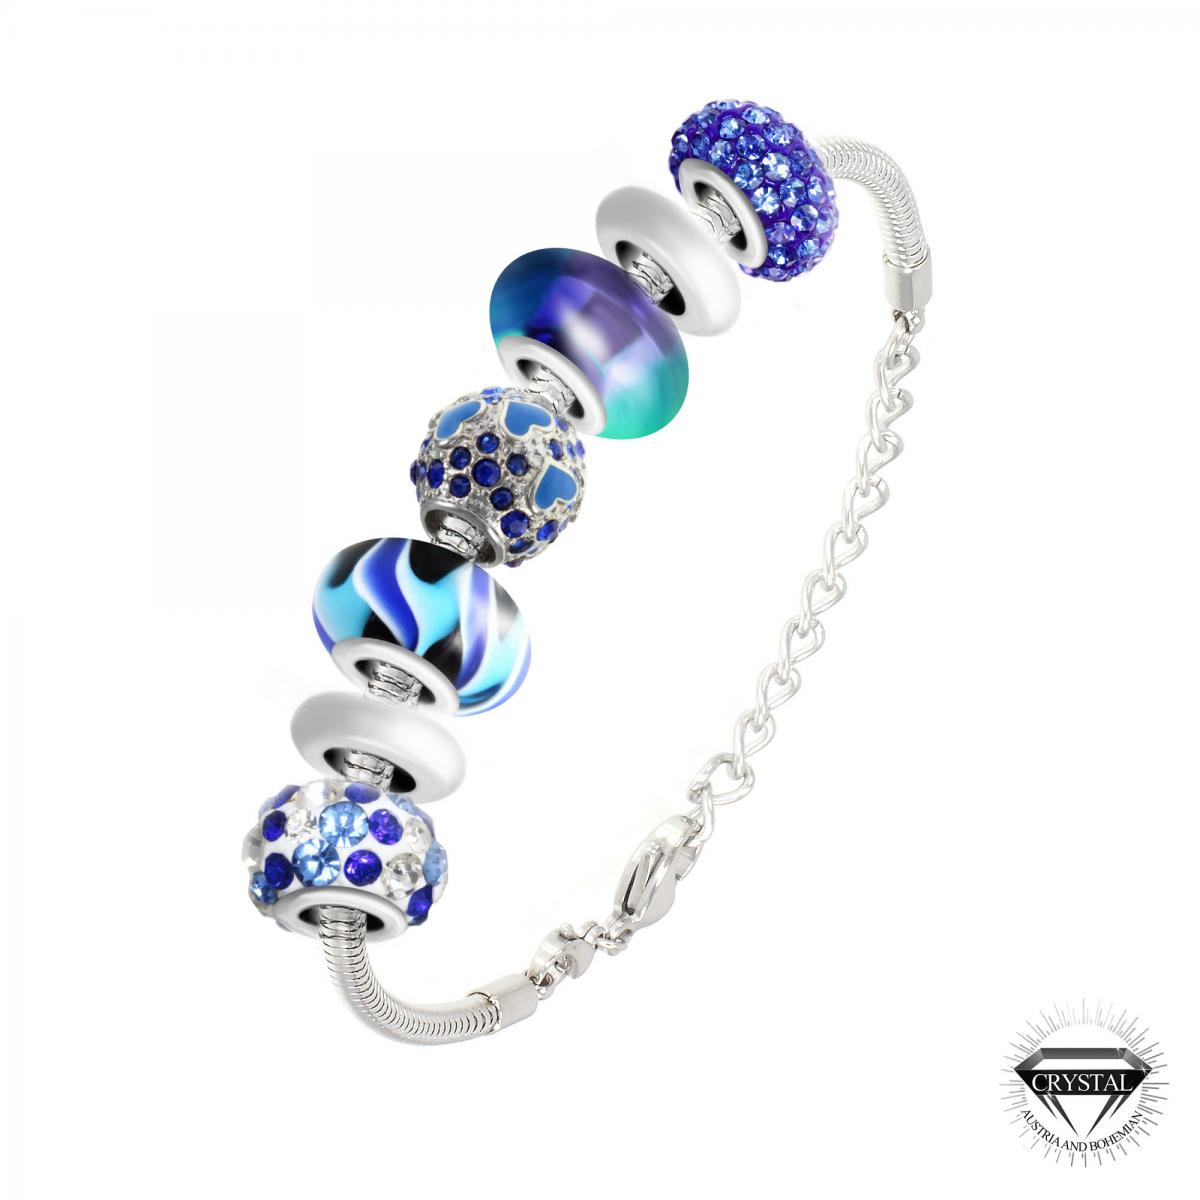 Promo : Bracelet de charms perles bleus et acier SC Crystal SB050+112+43+93+209-BLEU+146+43+34